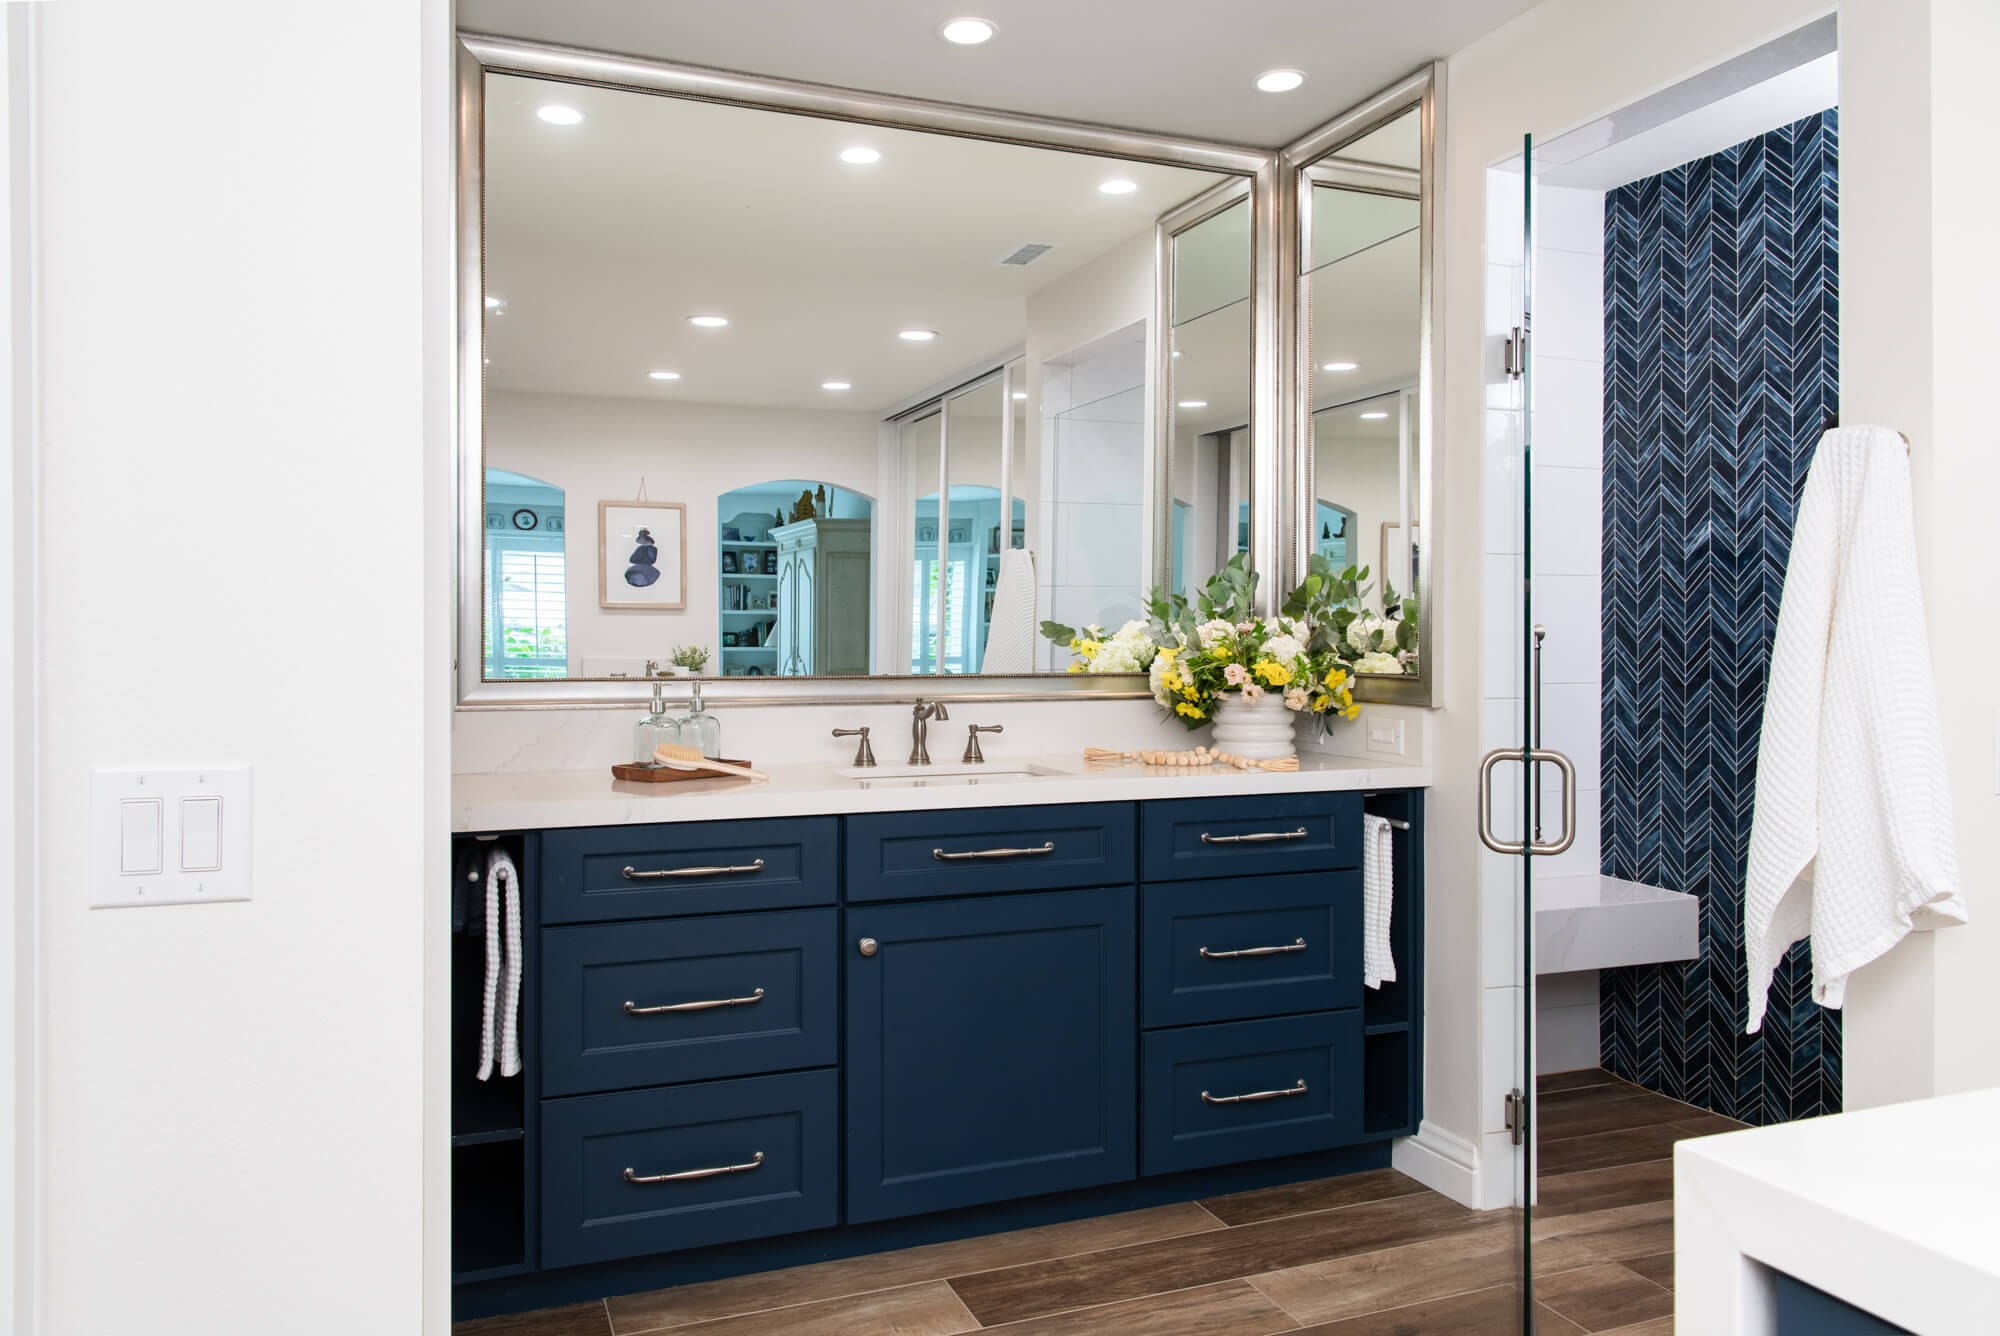 custom-glass-shower-door-with-through-the-door-satin-nickel-handle - easy clean bathroom remodel